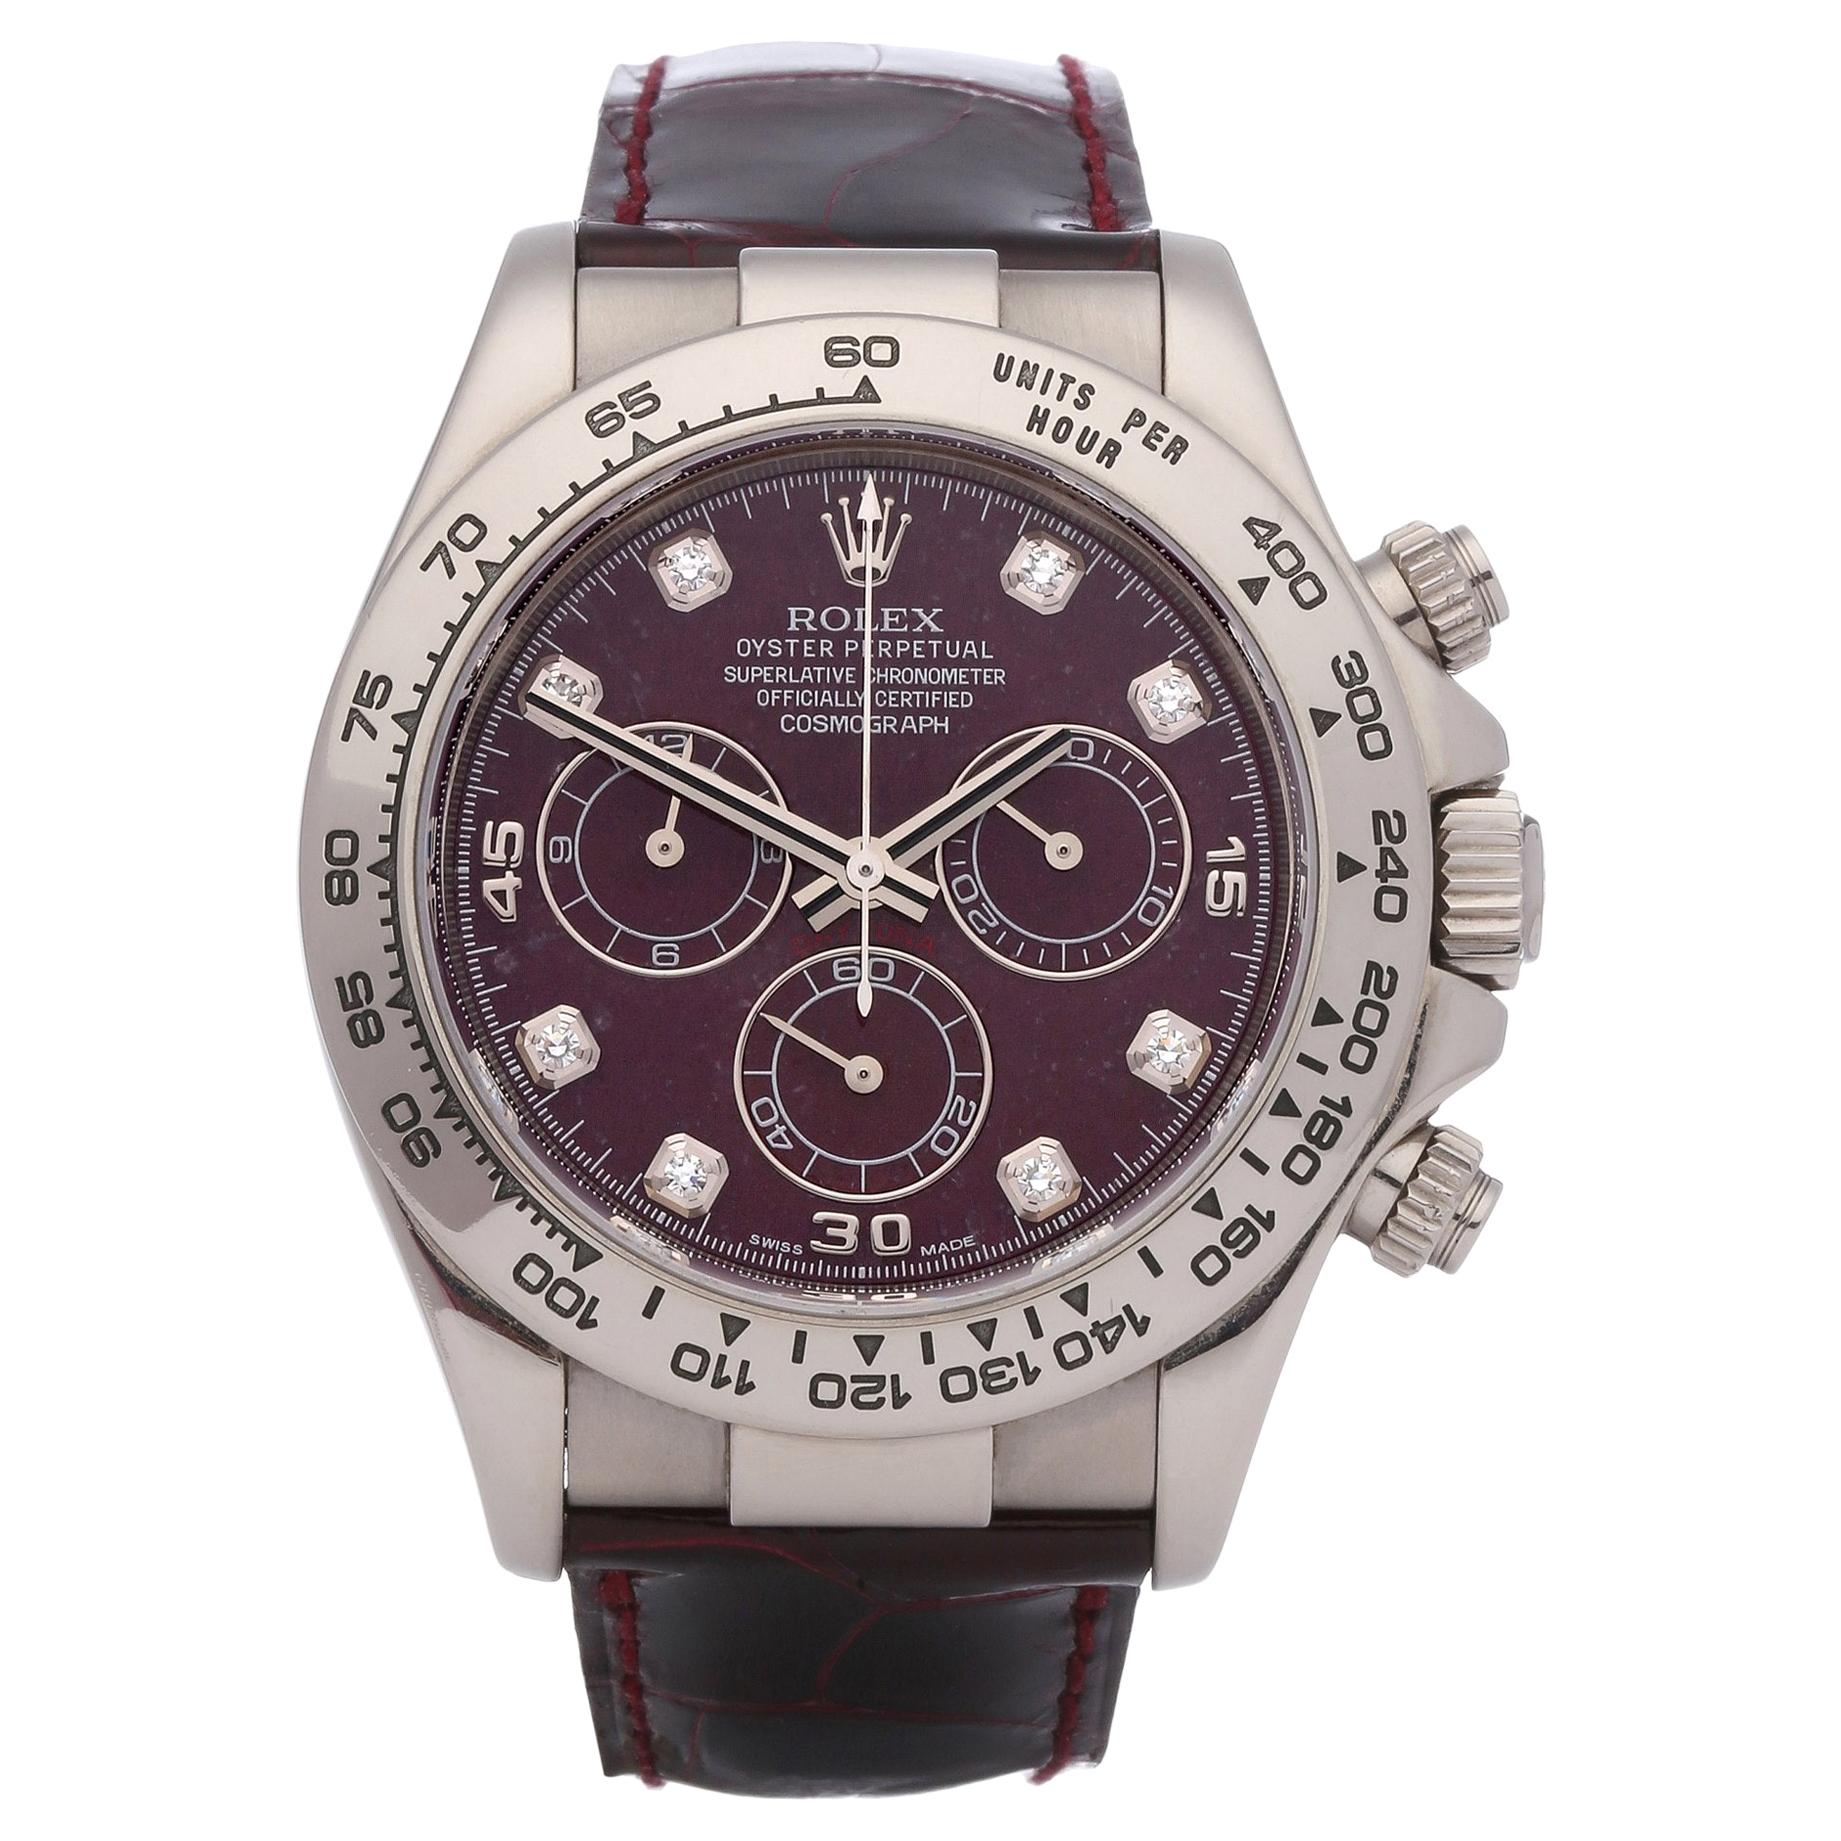 Rolex Daytona 116519 Men's White Gold Grossular Dial Watch